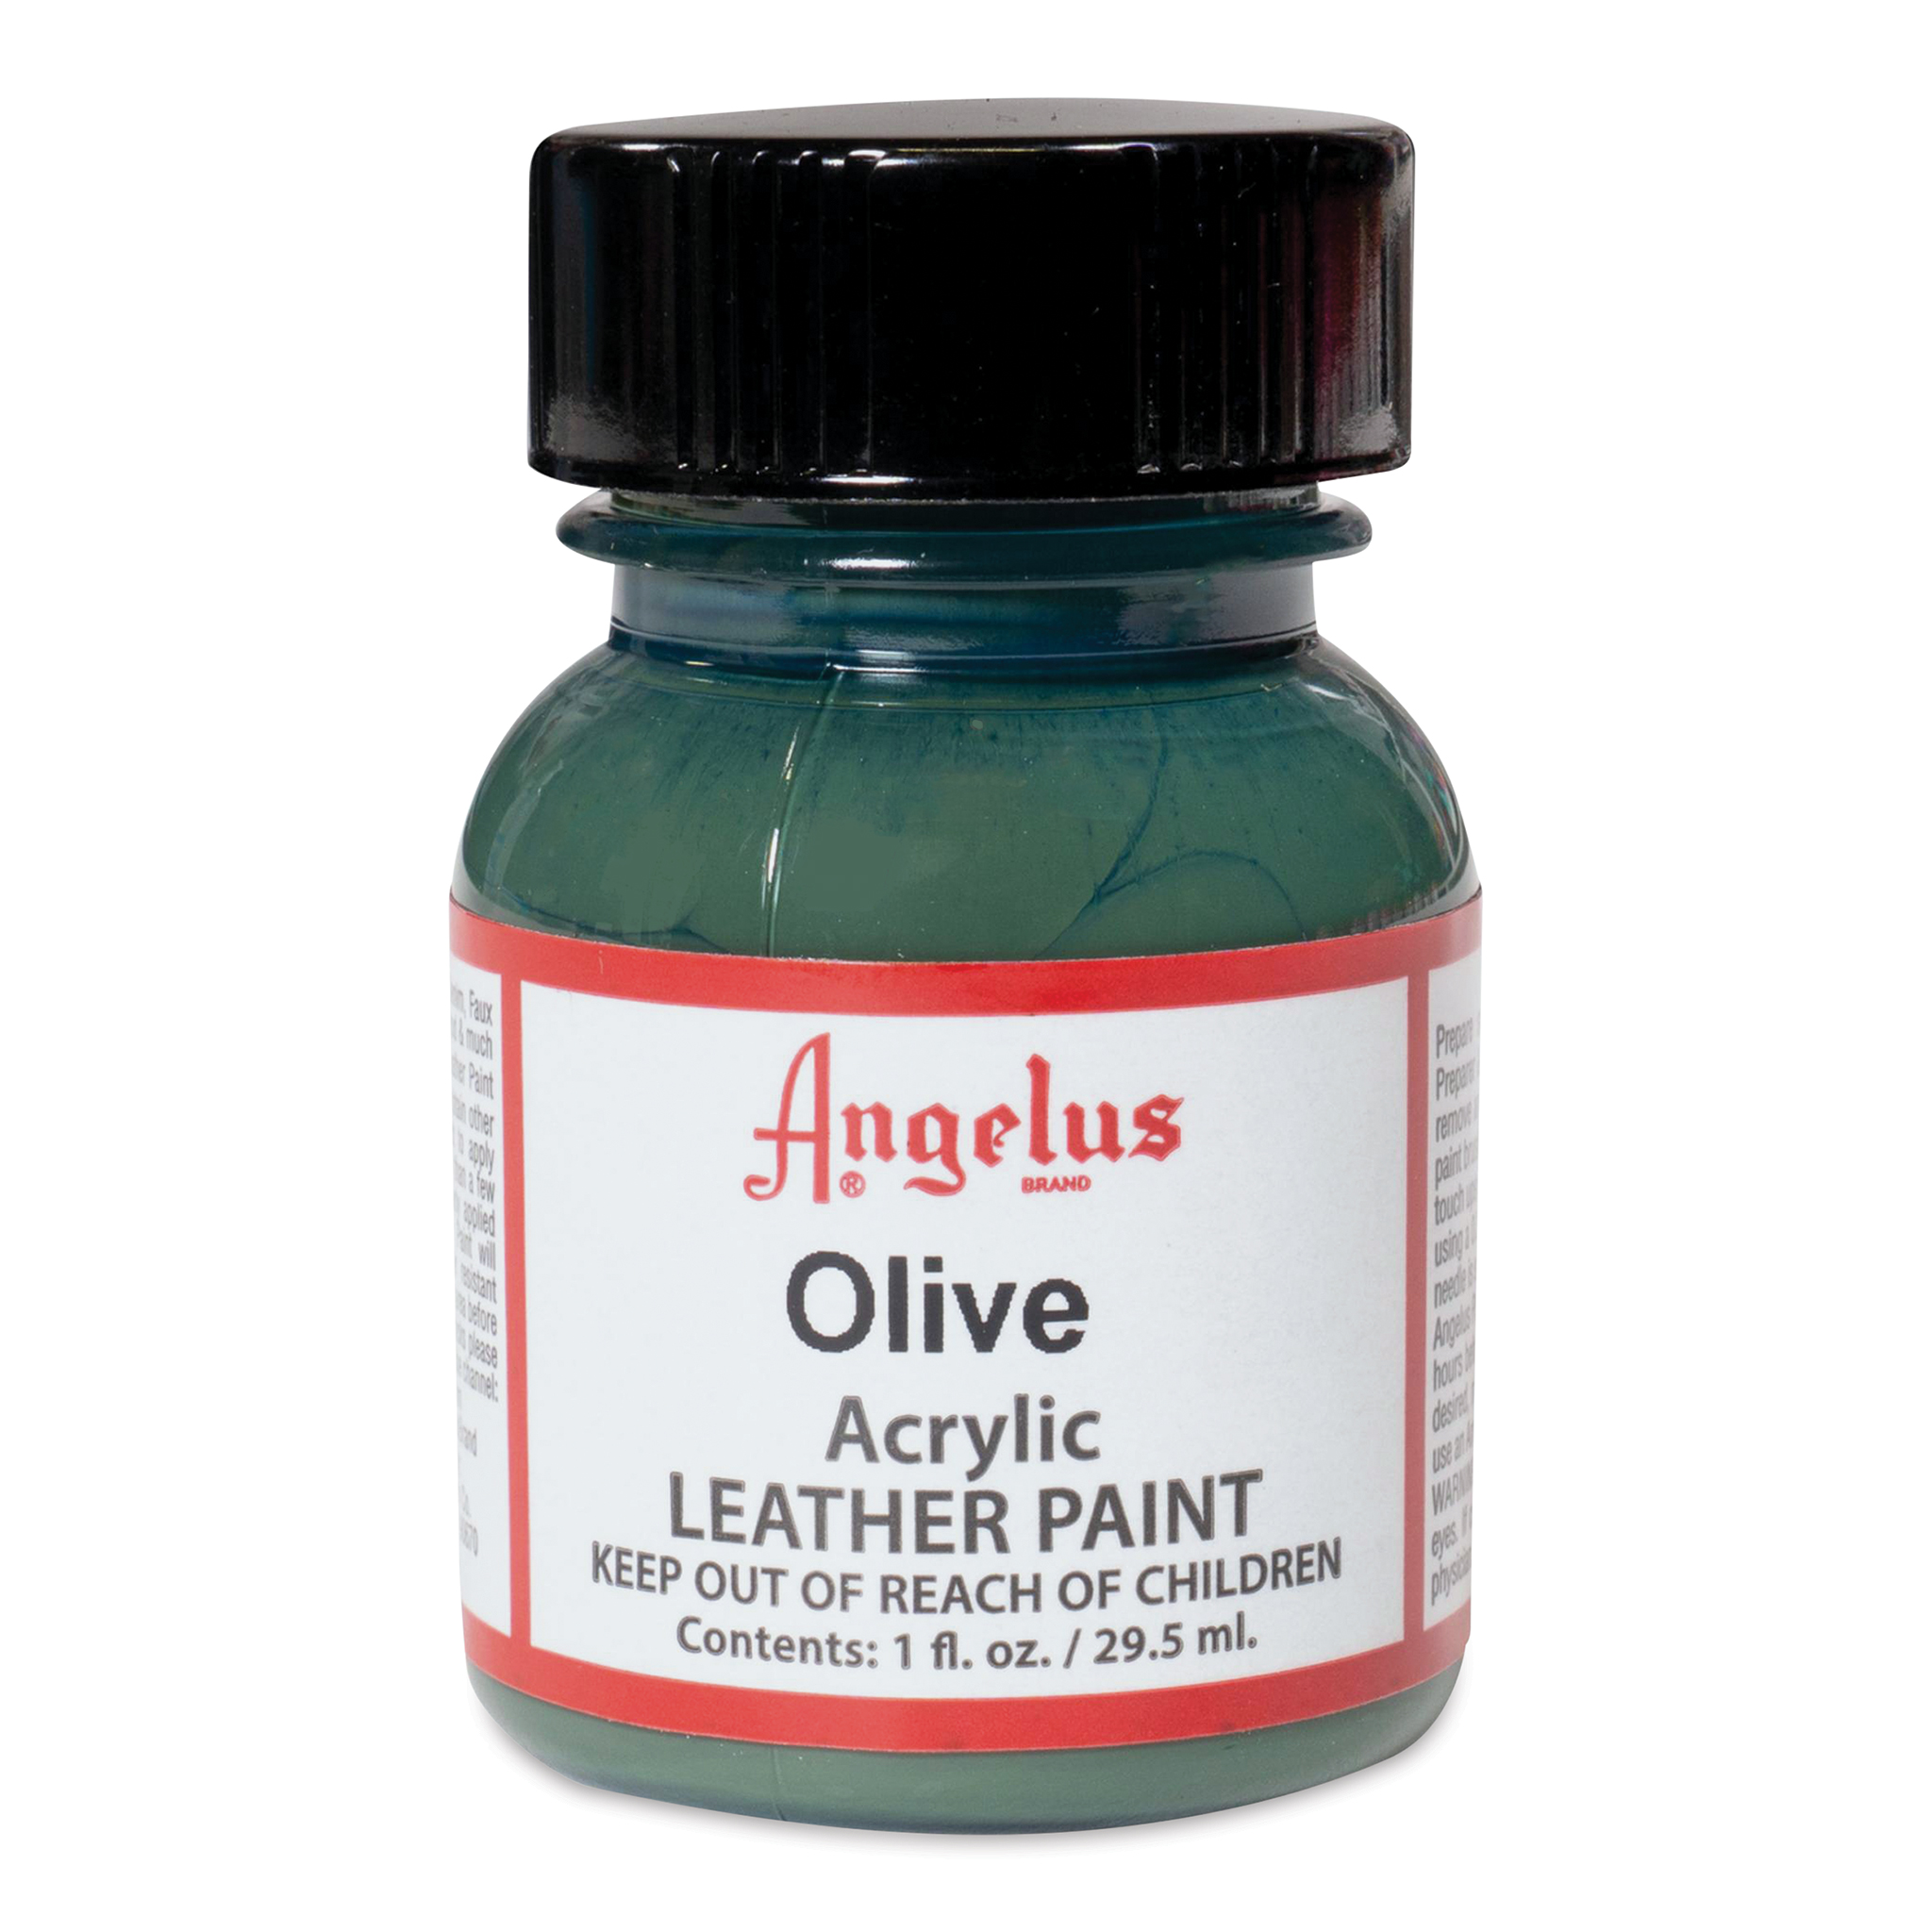 Angelus Acrylic Leather Paint - Olive, 1 oz